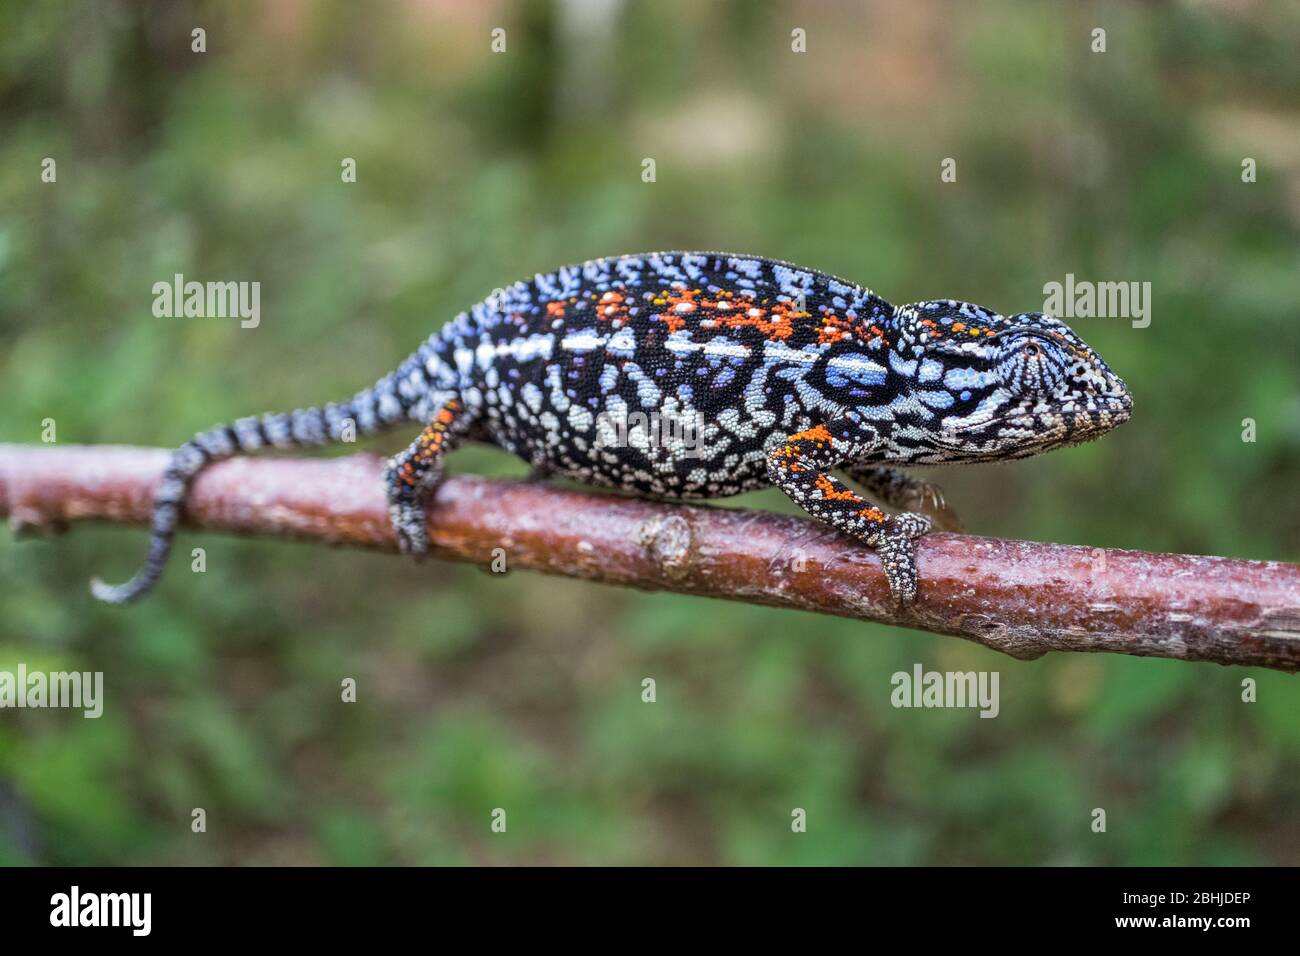 Chameleon of Madagascar Stock Photo